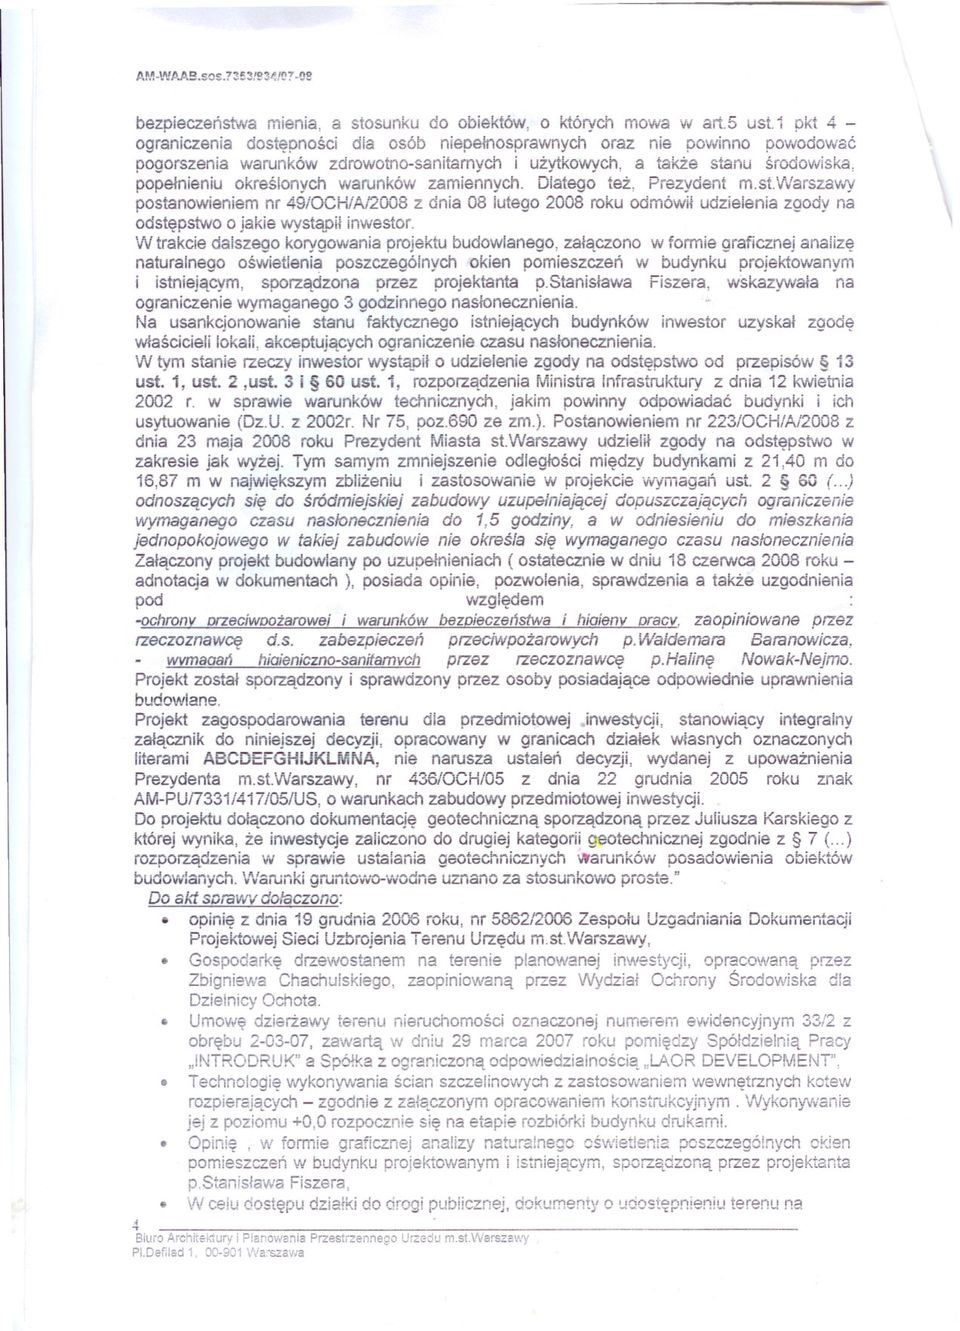 warunków zamiennych. Dlatego tez, Prezydent m.st.warszavvay postanowieniem nr 49/0CHiA/2008 z dnia 08 lutego 2008 roku odmówil udzielenia zgody na odstepstwo o jakie wystaoil inwestor.